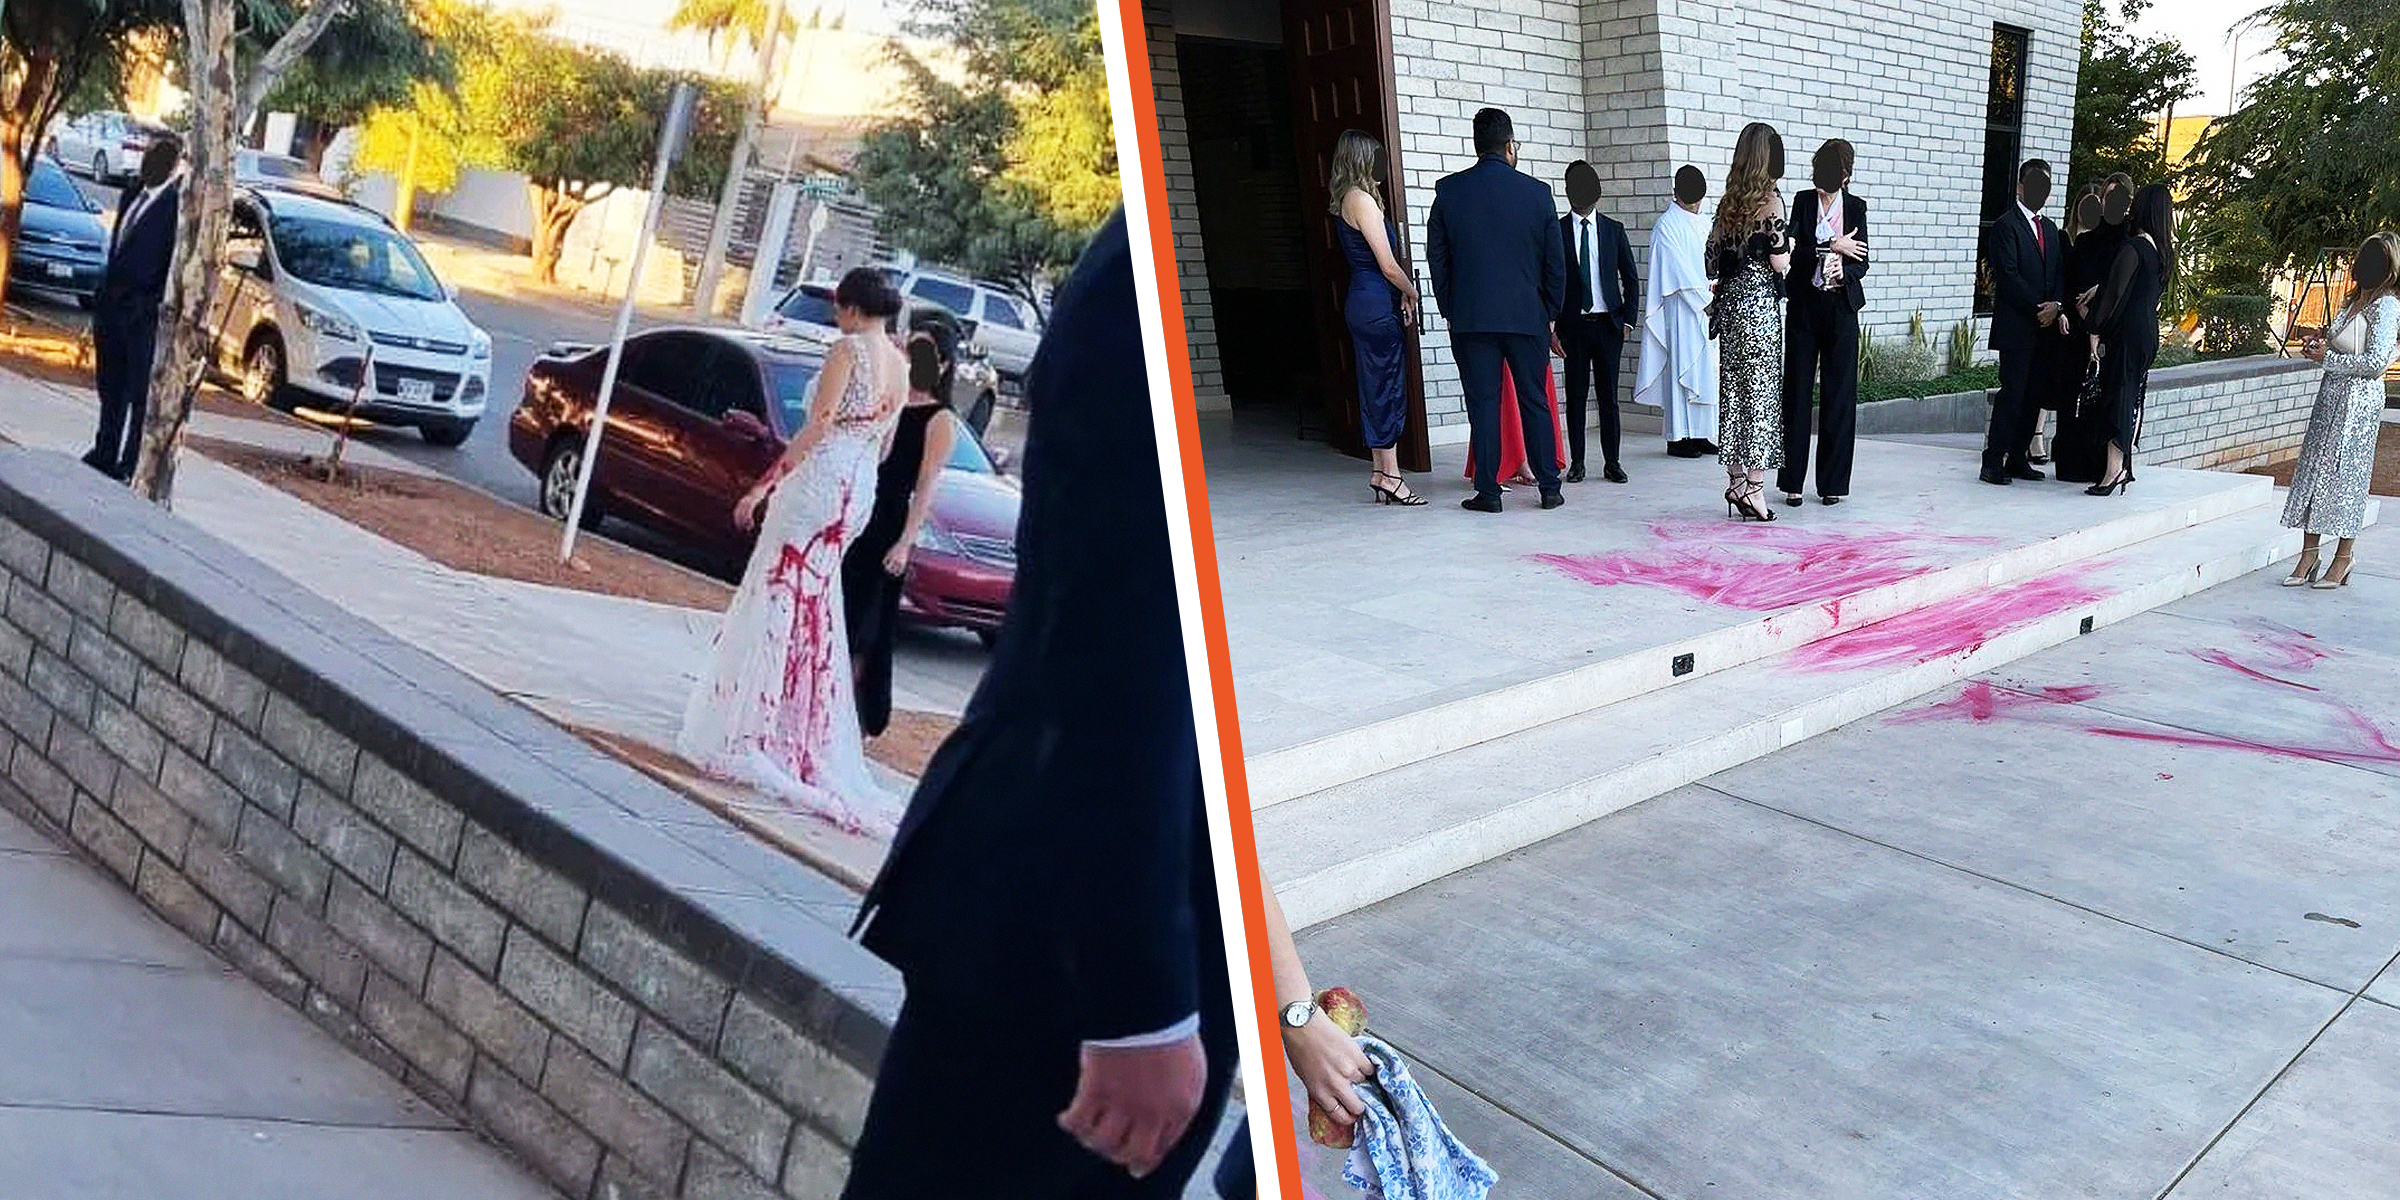 La mariée avec de la peinture sur sa robe de mariée | Invités au mariage | Source : Reddit/r/weddingshaming